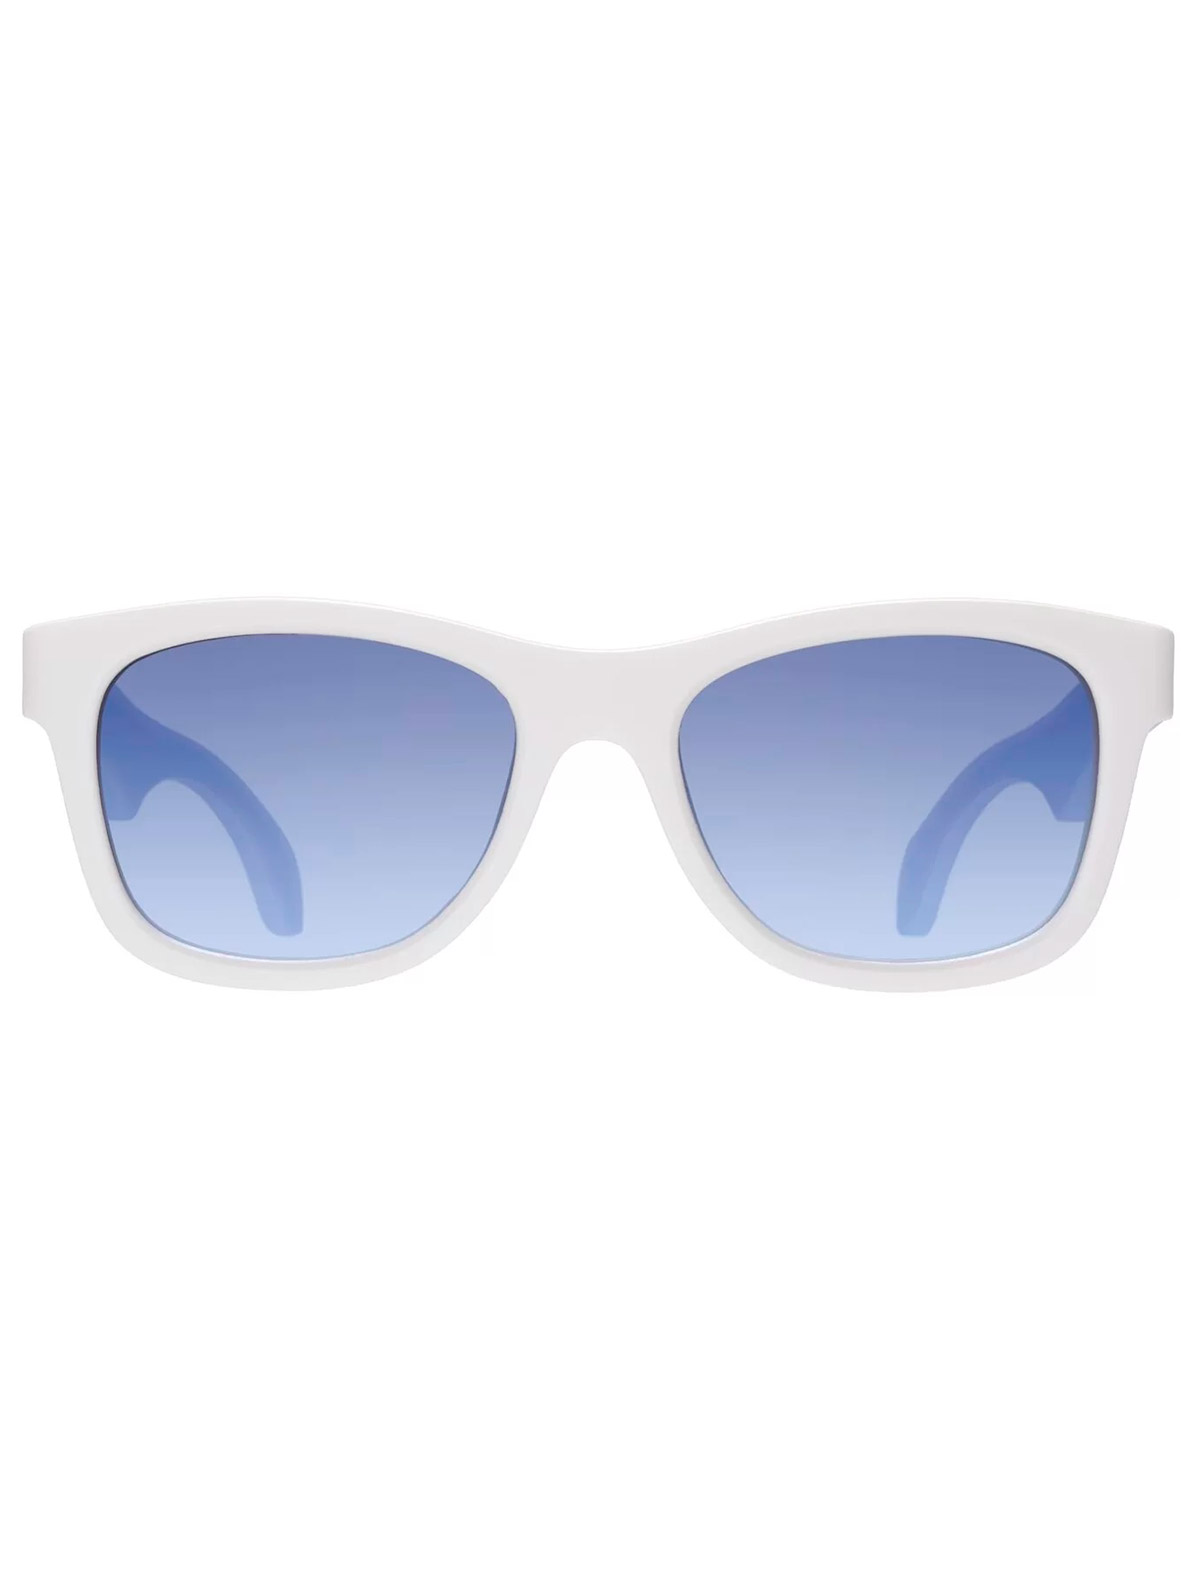 солнцезащитные очки babiators малыши, белые